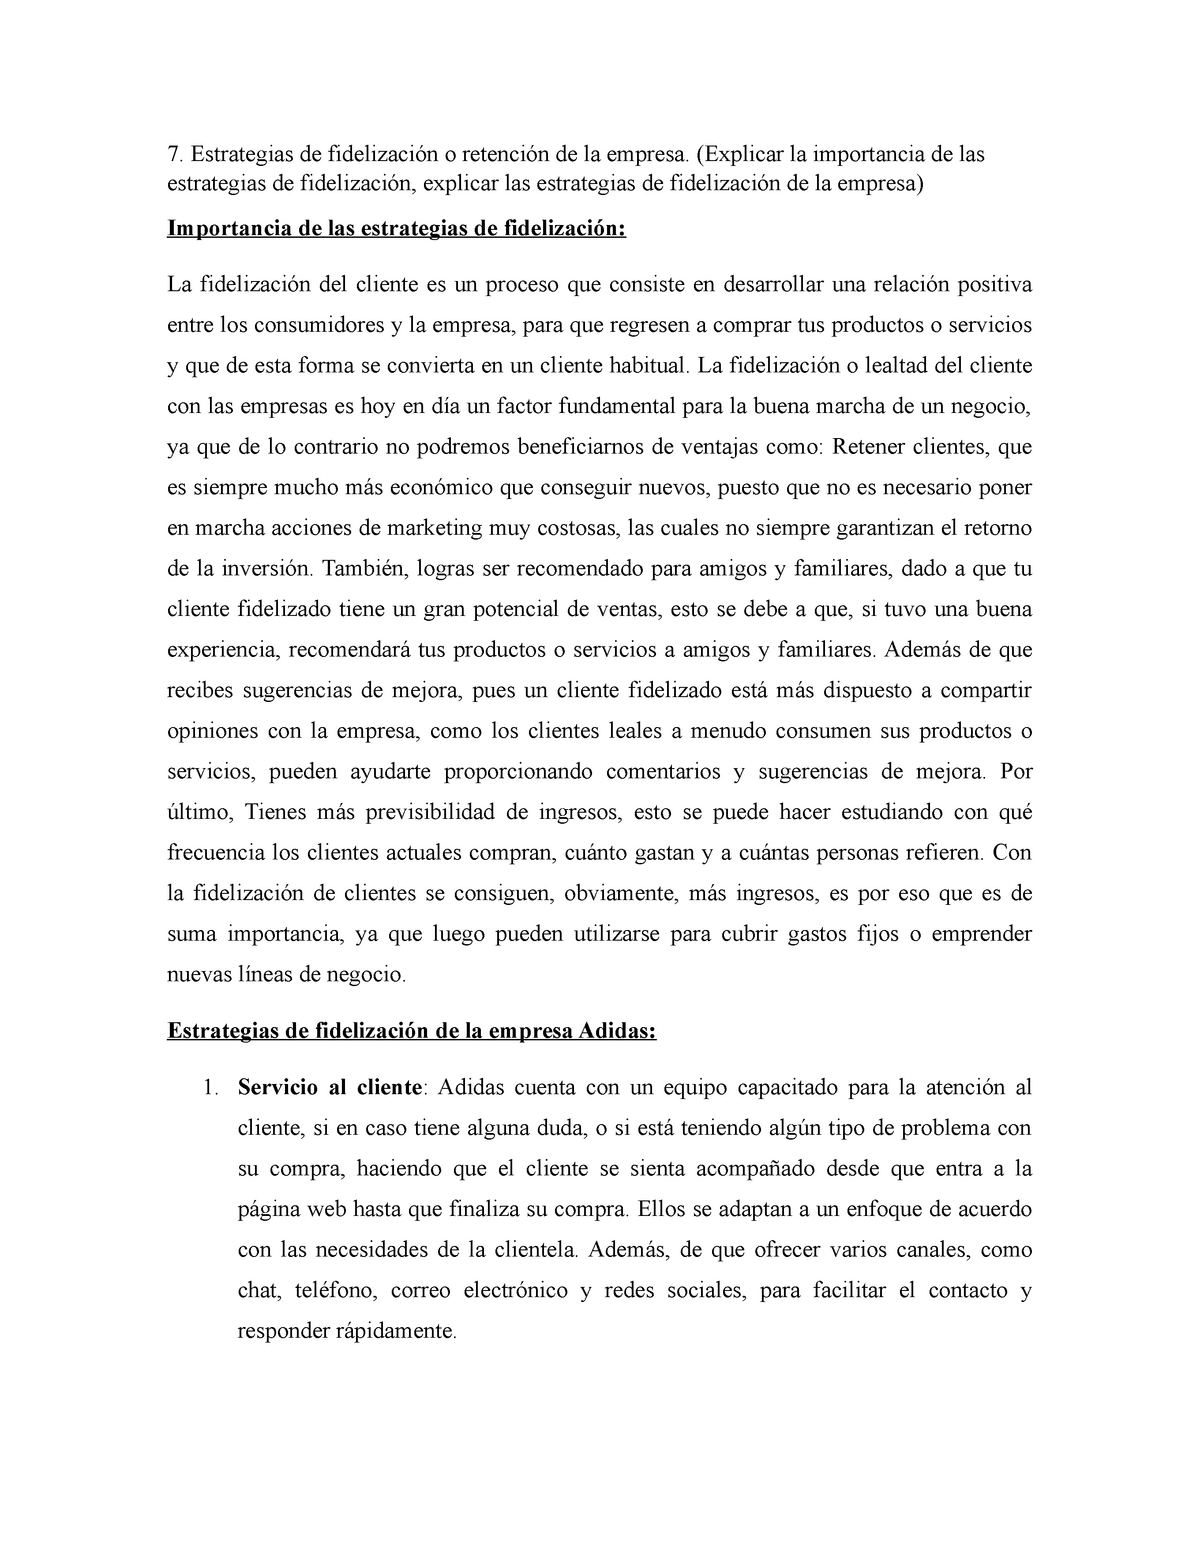 Estrategias DE Fideliazación DE Adidas- Nicolle - Estrategias de ...